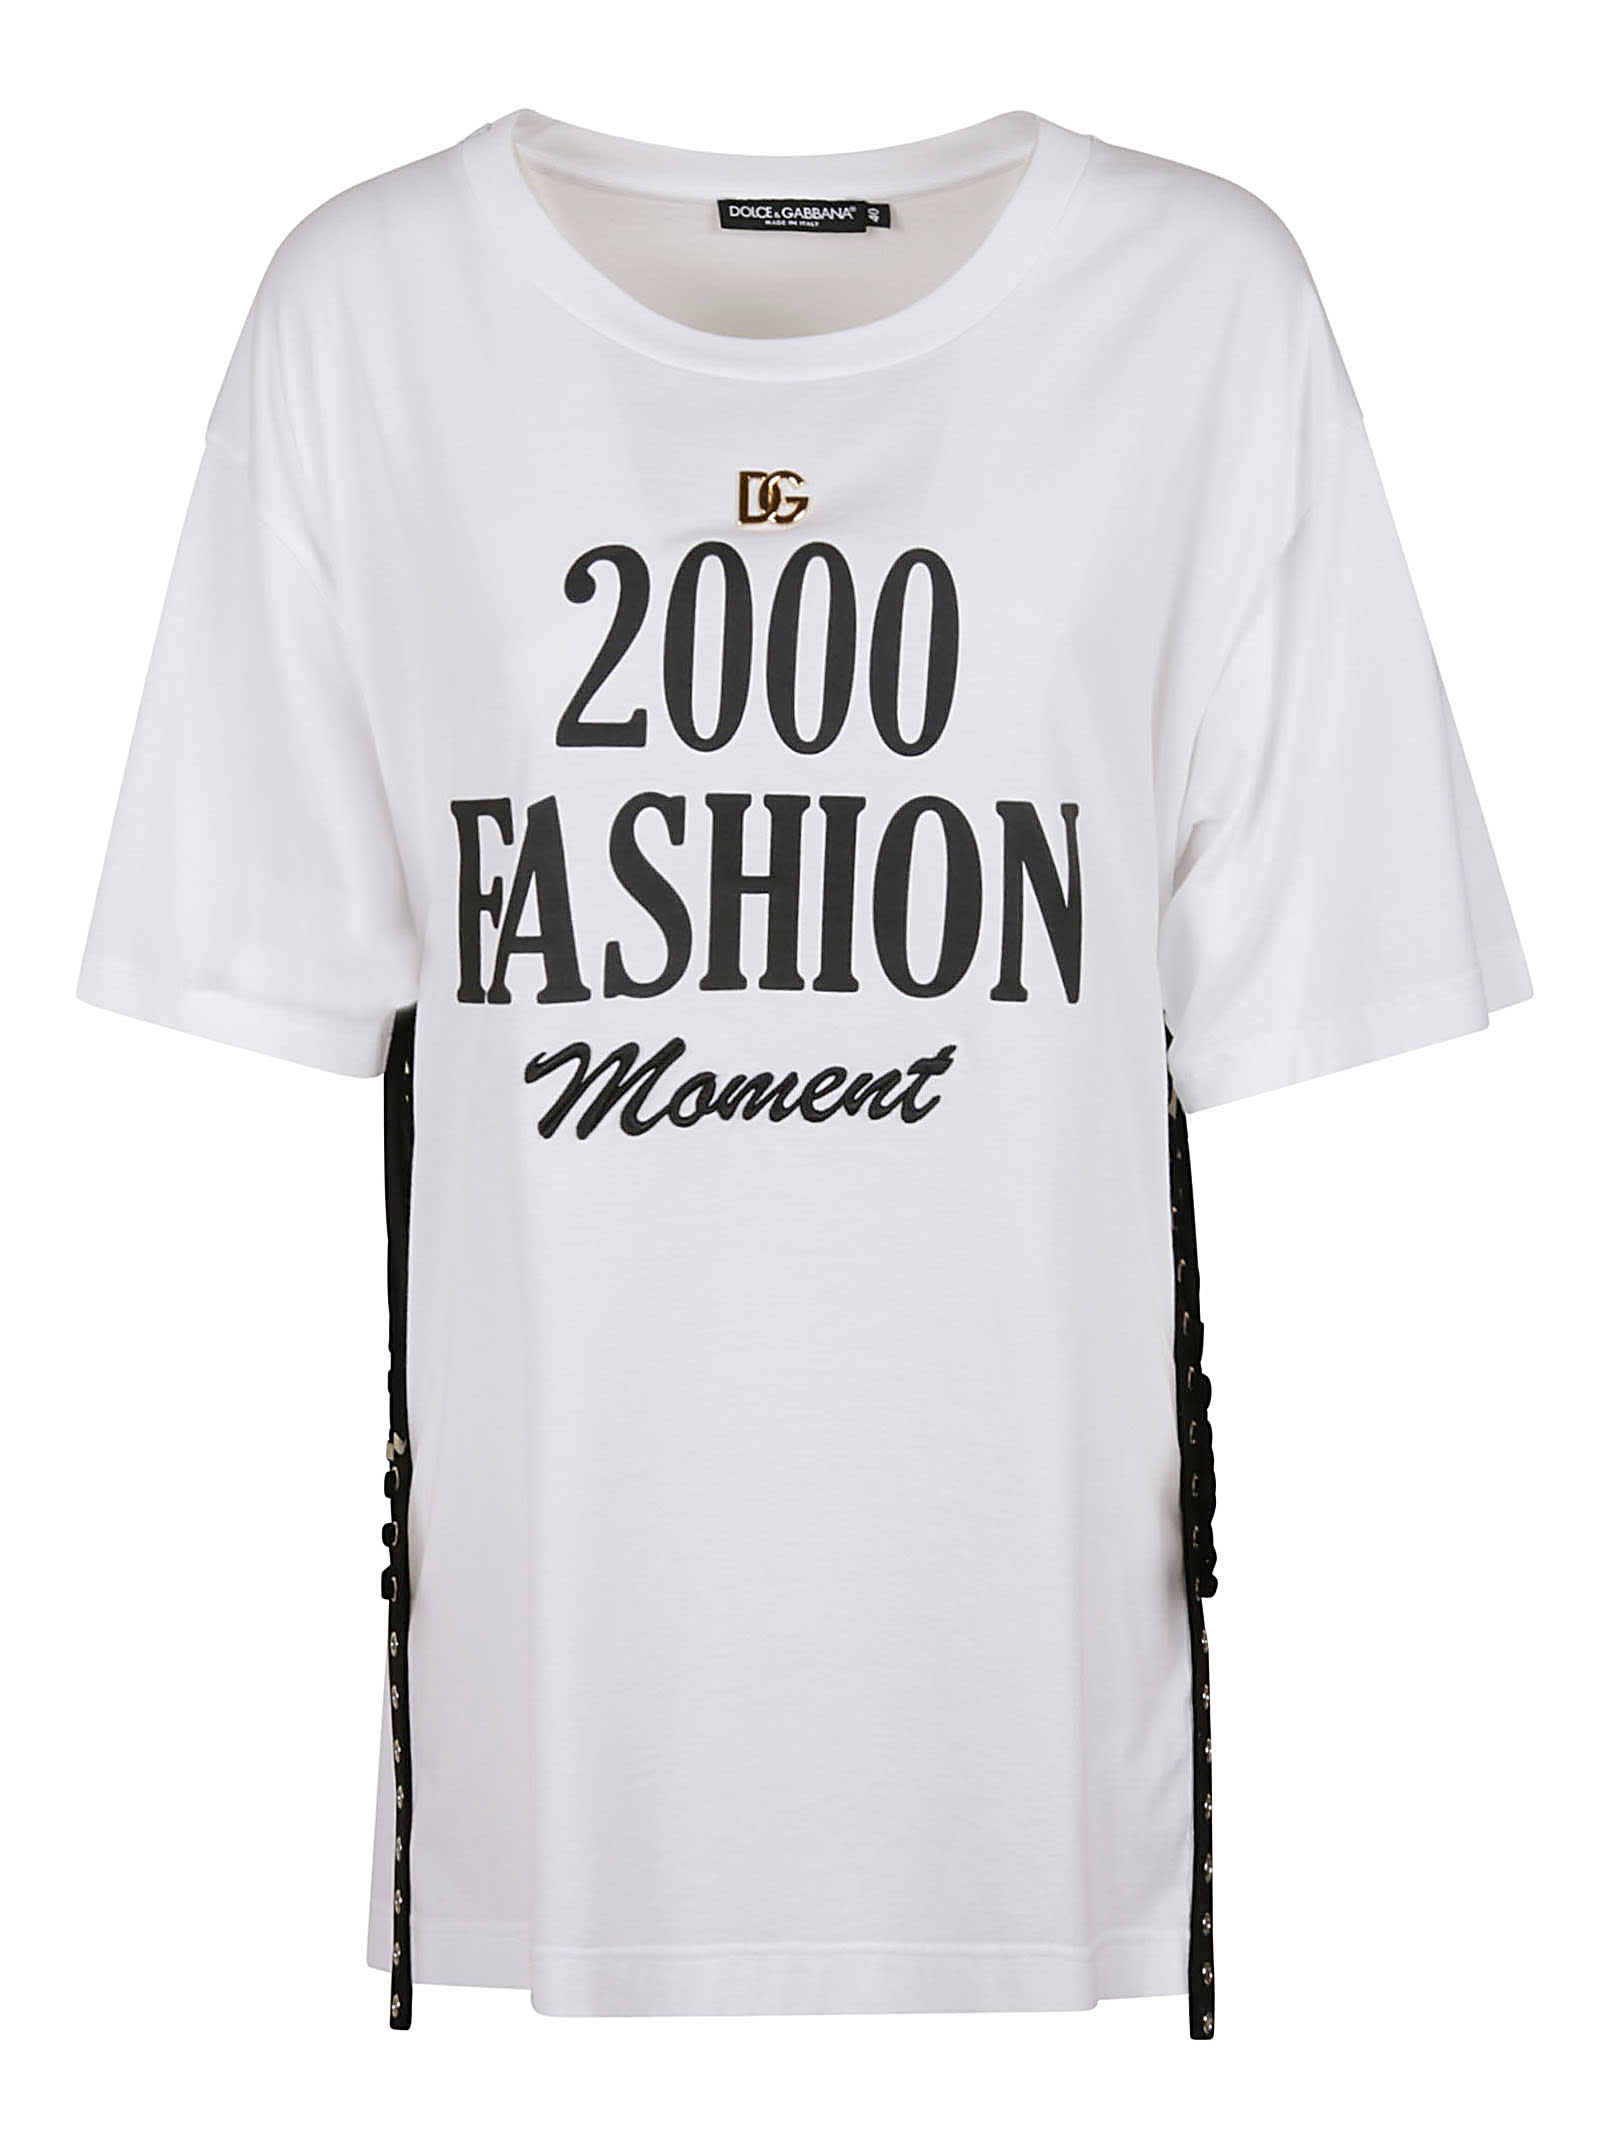 Dolce & Gabbana 2000 Fashion Movement T-shirt